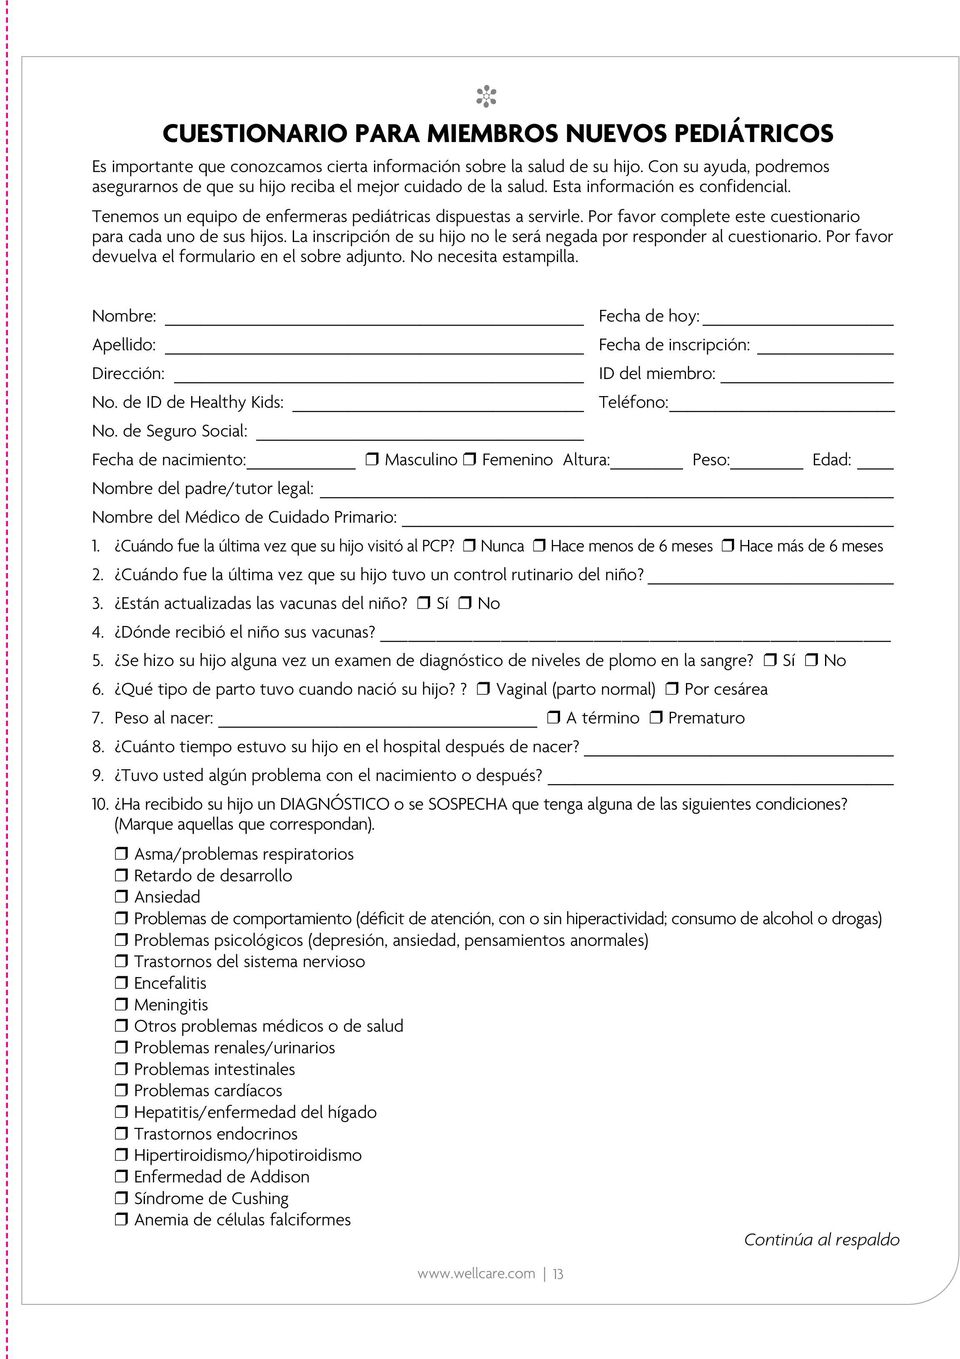 Por favor complete este cuestionario para cada uno de sus hijos. La inscripción de su hijo no le será negada por responder al cuestionario. Por favor devuelva el formulario en el sobre adjunto.